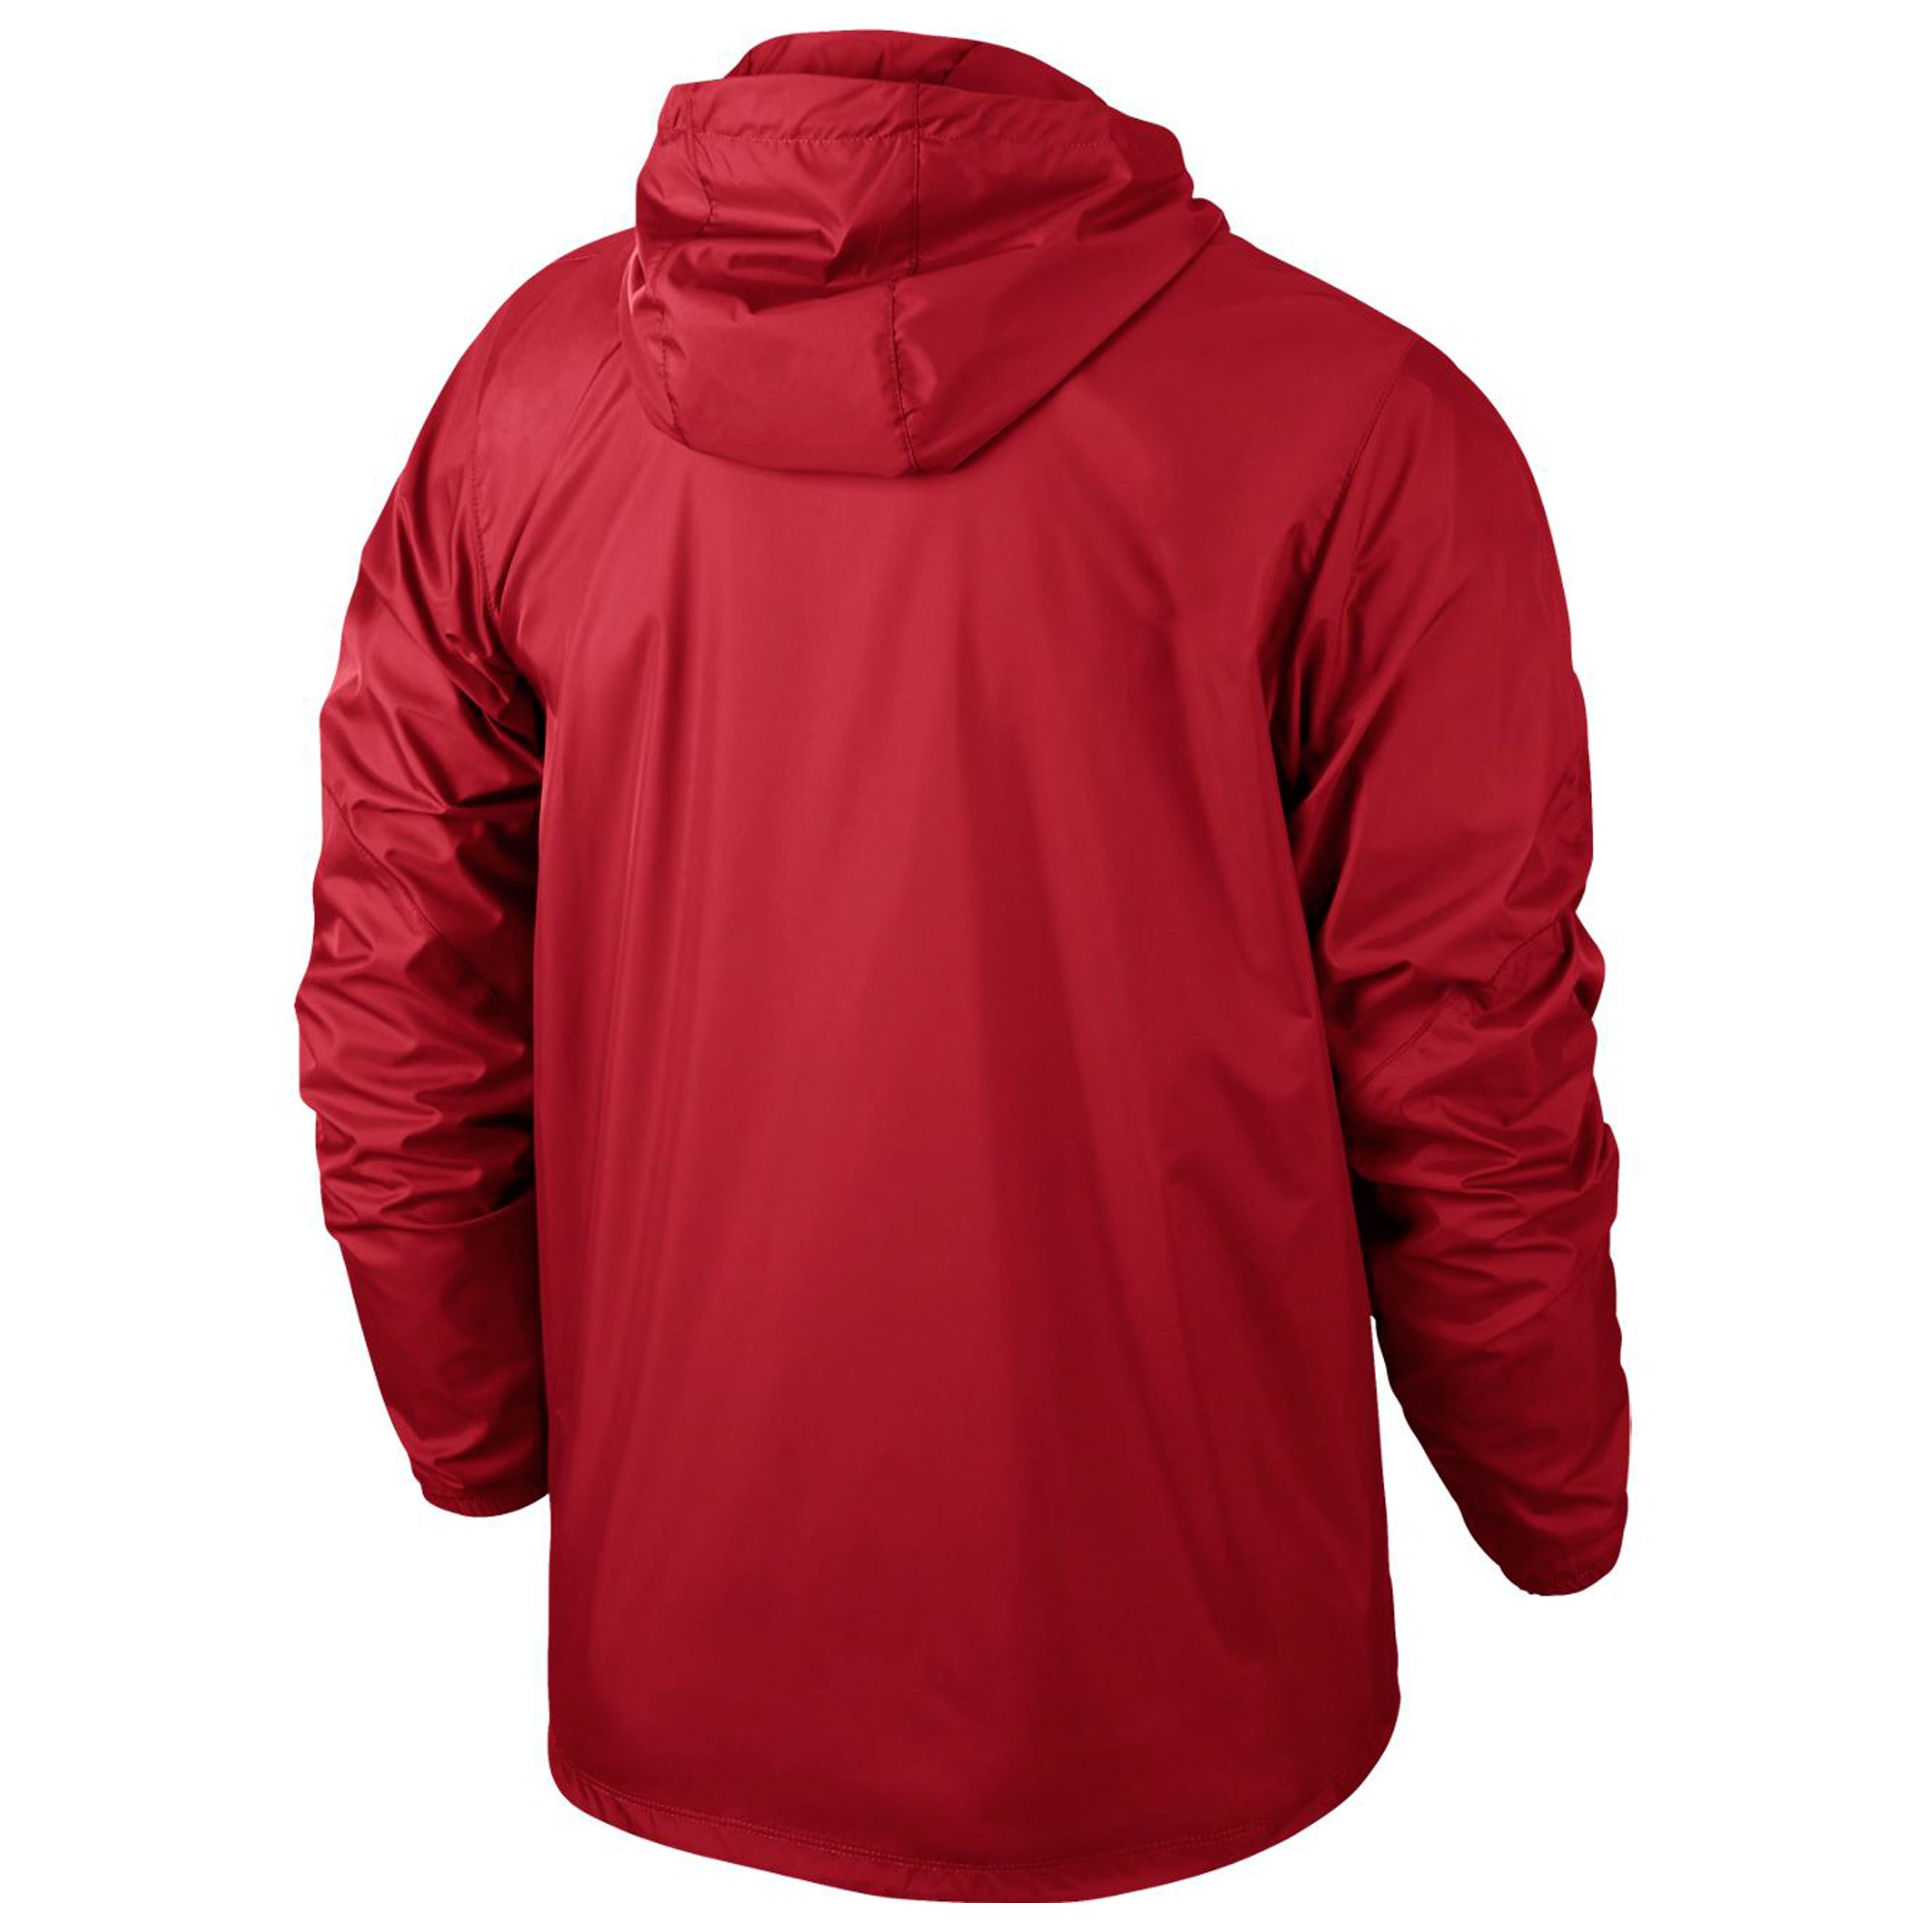 Nike Team Sideline Rain Jacket Erkek Yağmurluk Ürün kodu: 645480-657 |  Etichet Sport